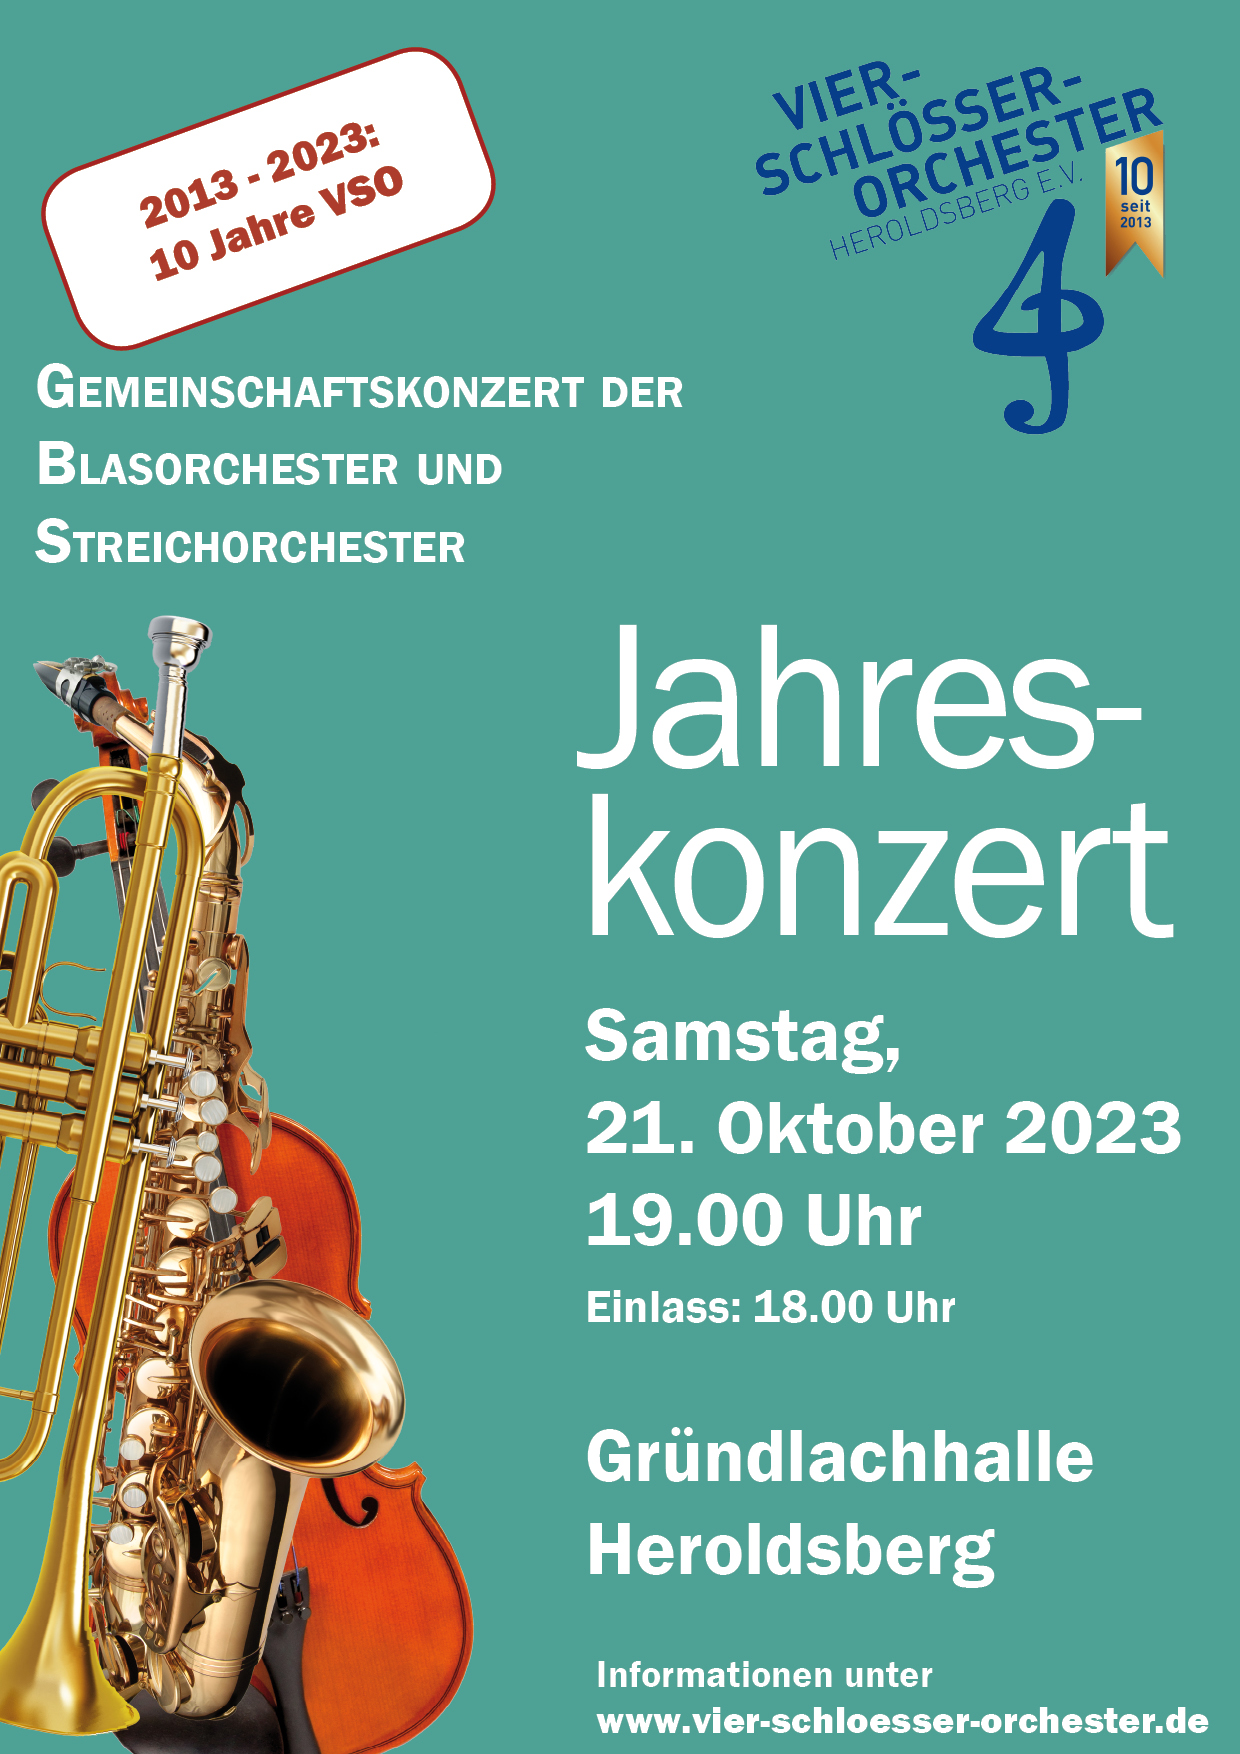 Jahreskonzert - 10 Jahre Vier-Schlösser-Orchester Heroldsberg